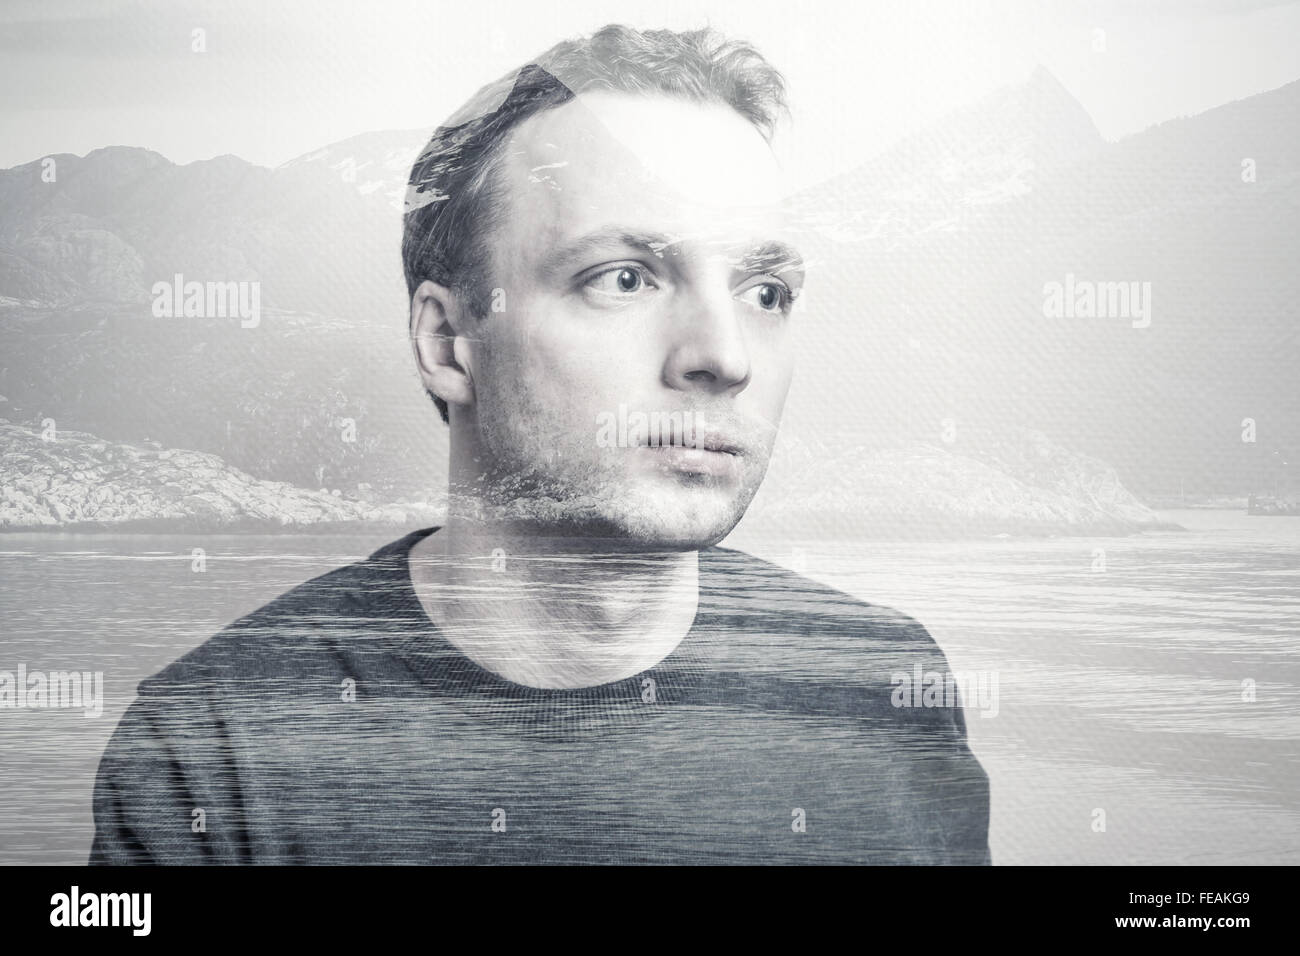 Adulto joven hombre caucásico retrato combinado con paisaje de las montañas costeras, exposición doble efecto fotográfico. Foto de stock